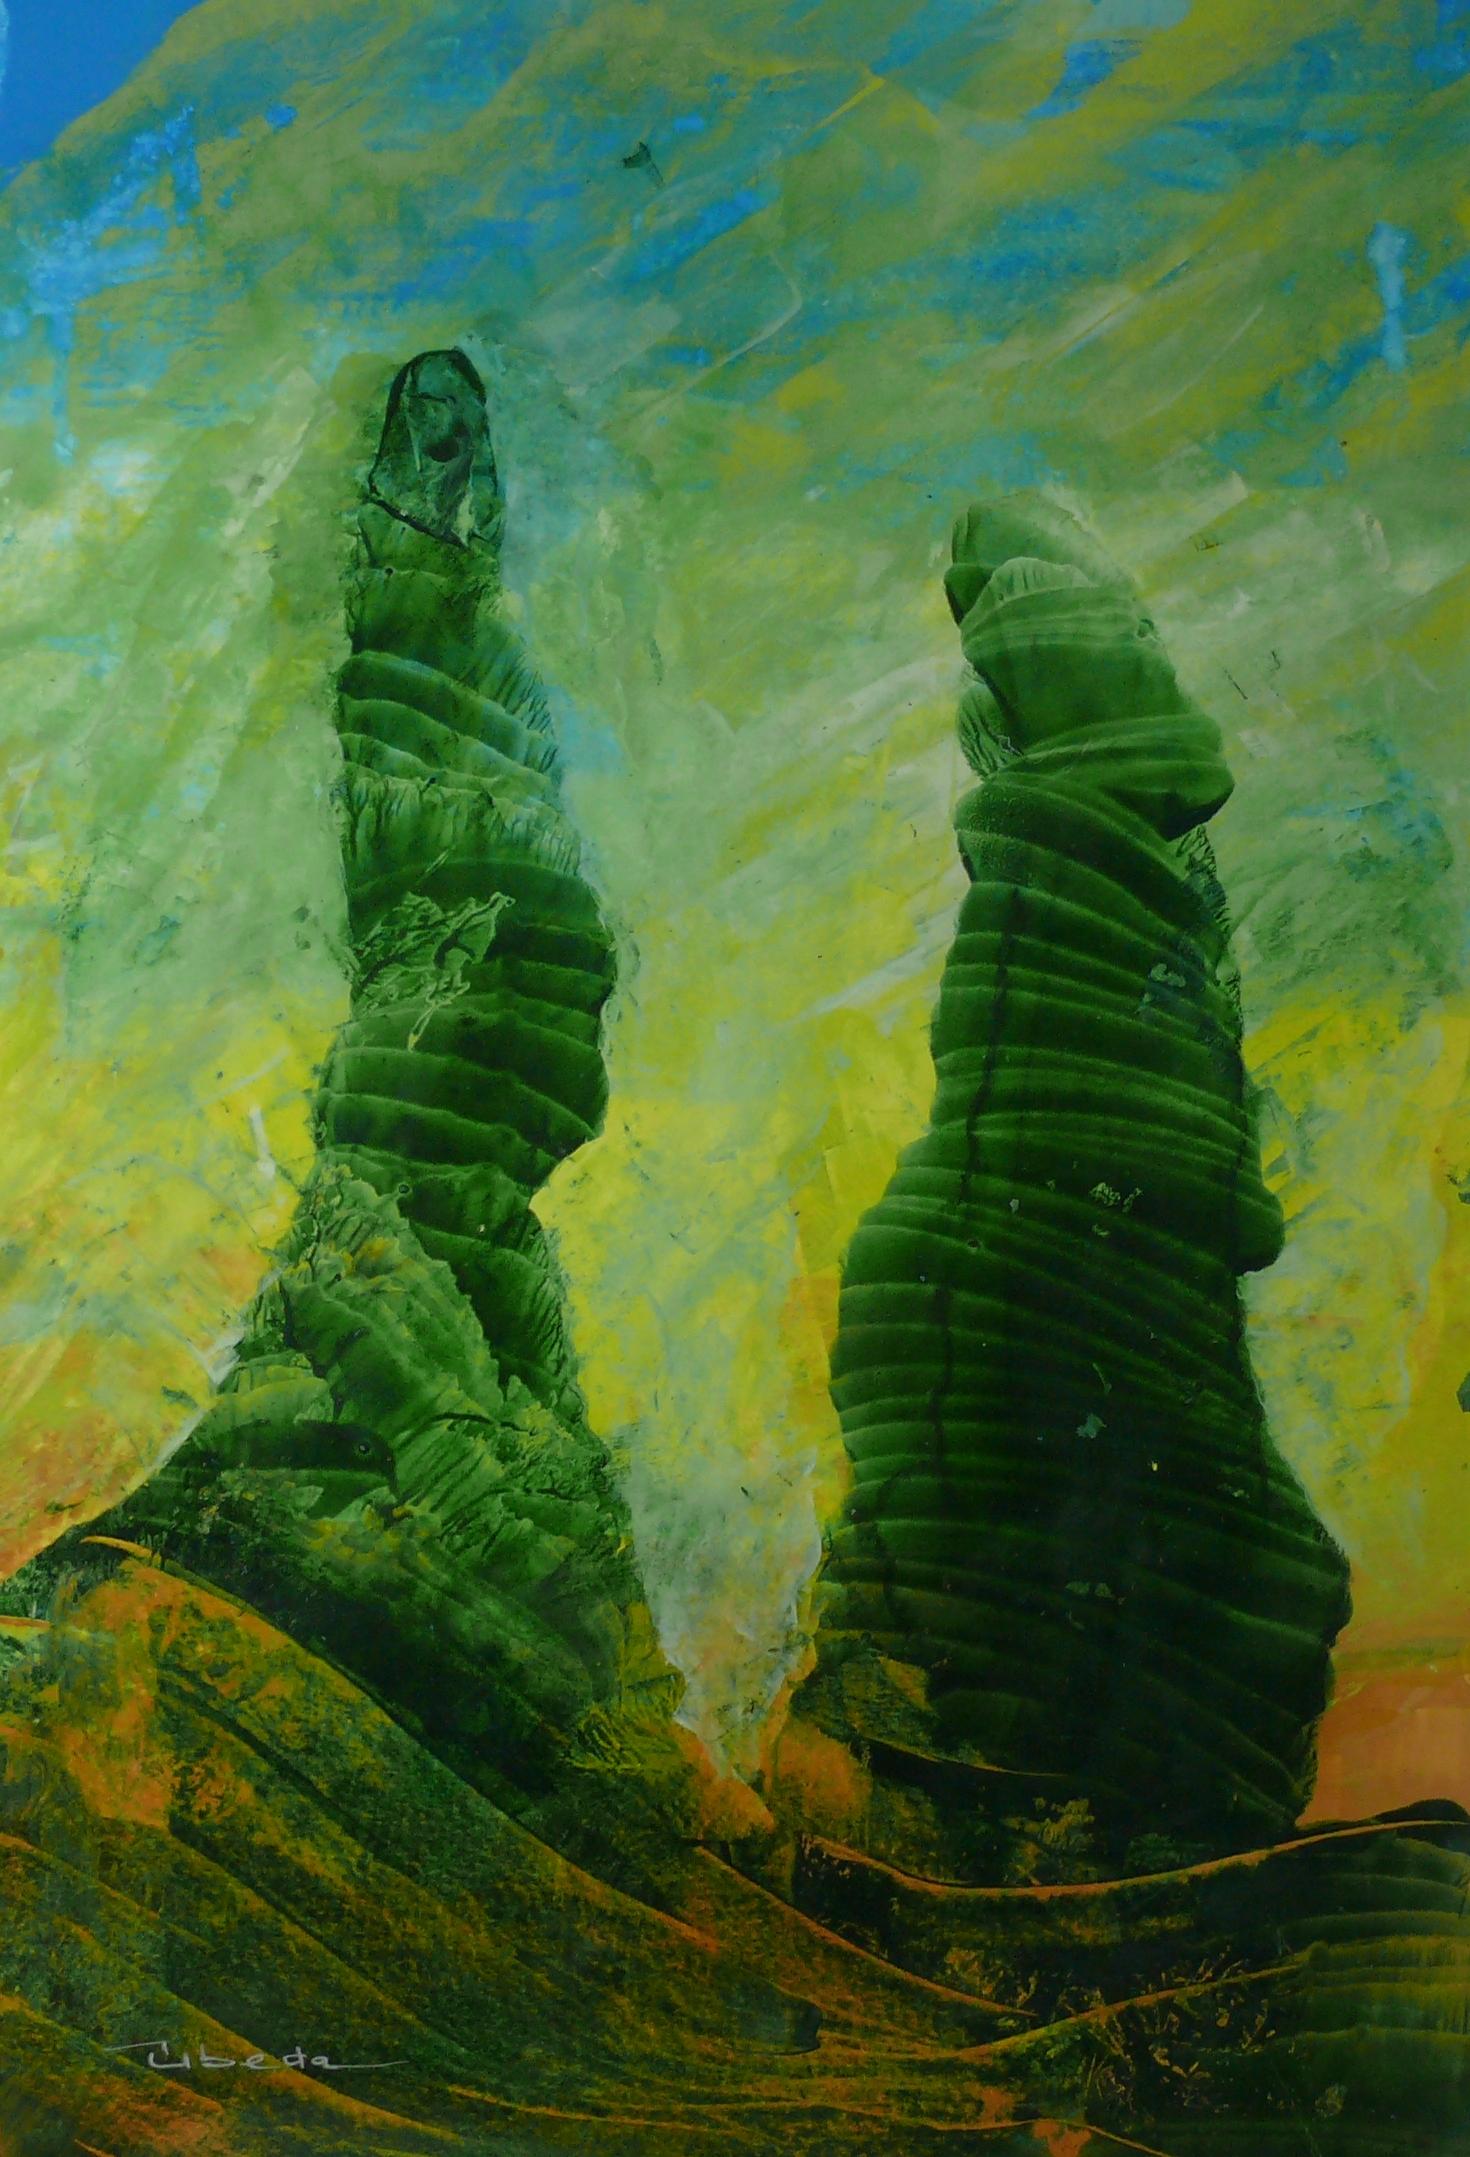 Ángel Luis Úbeda Landscape Painting - Under The Sea Series Nº 1. Úbeda Oil on Paper Fantasy green and orange Landscape